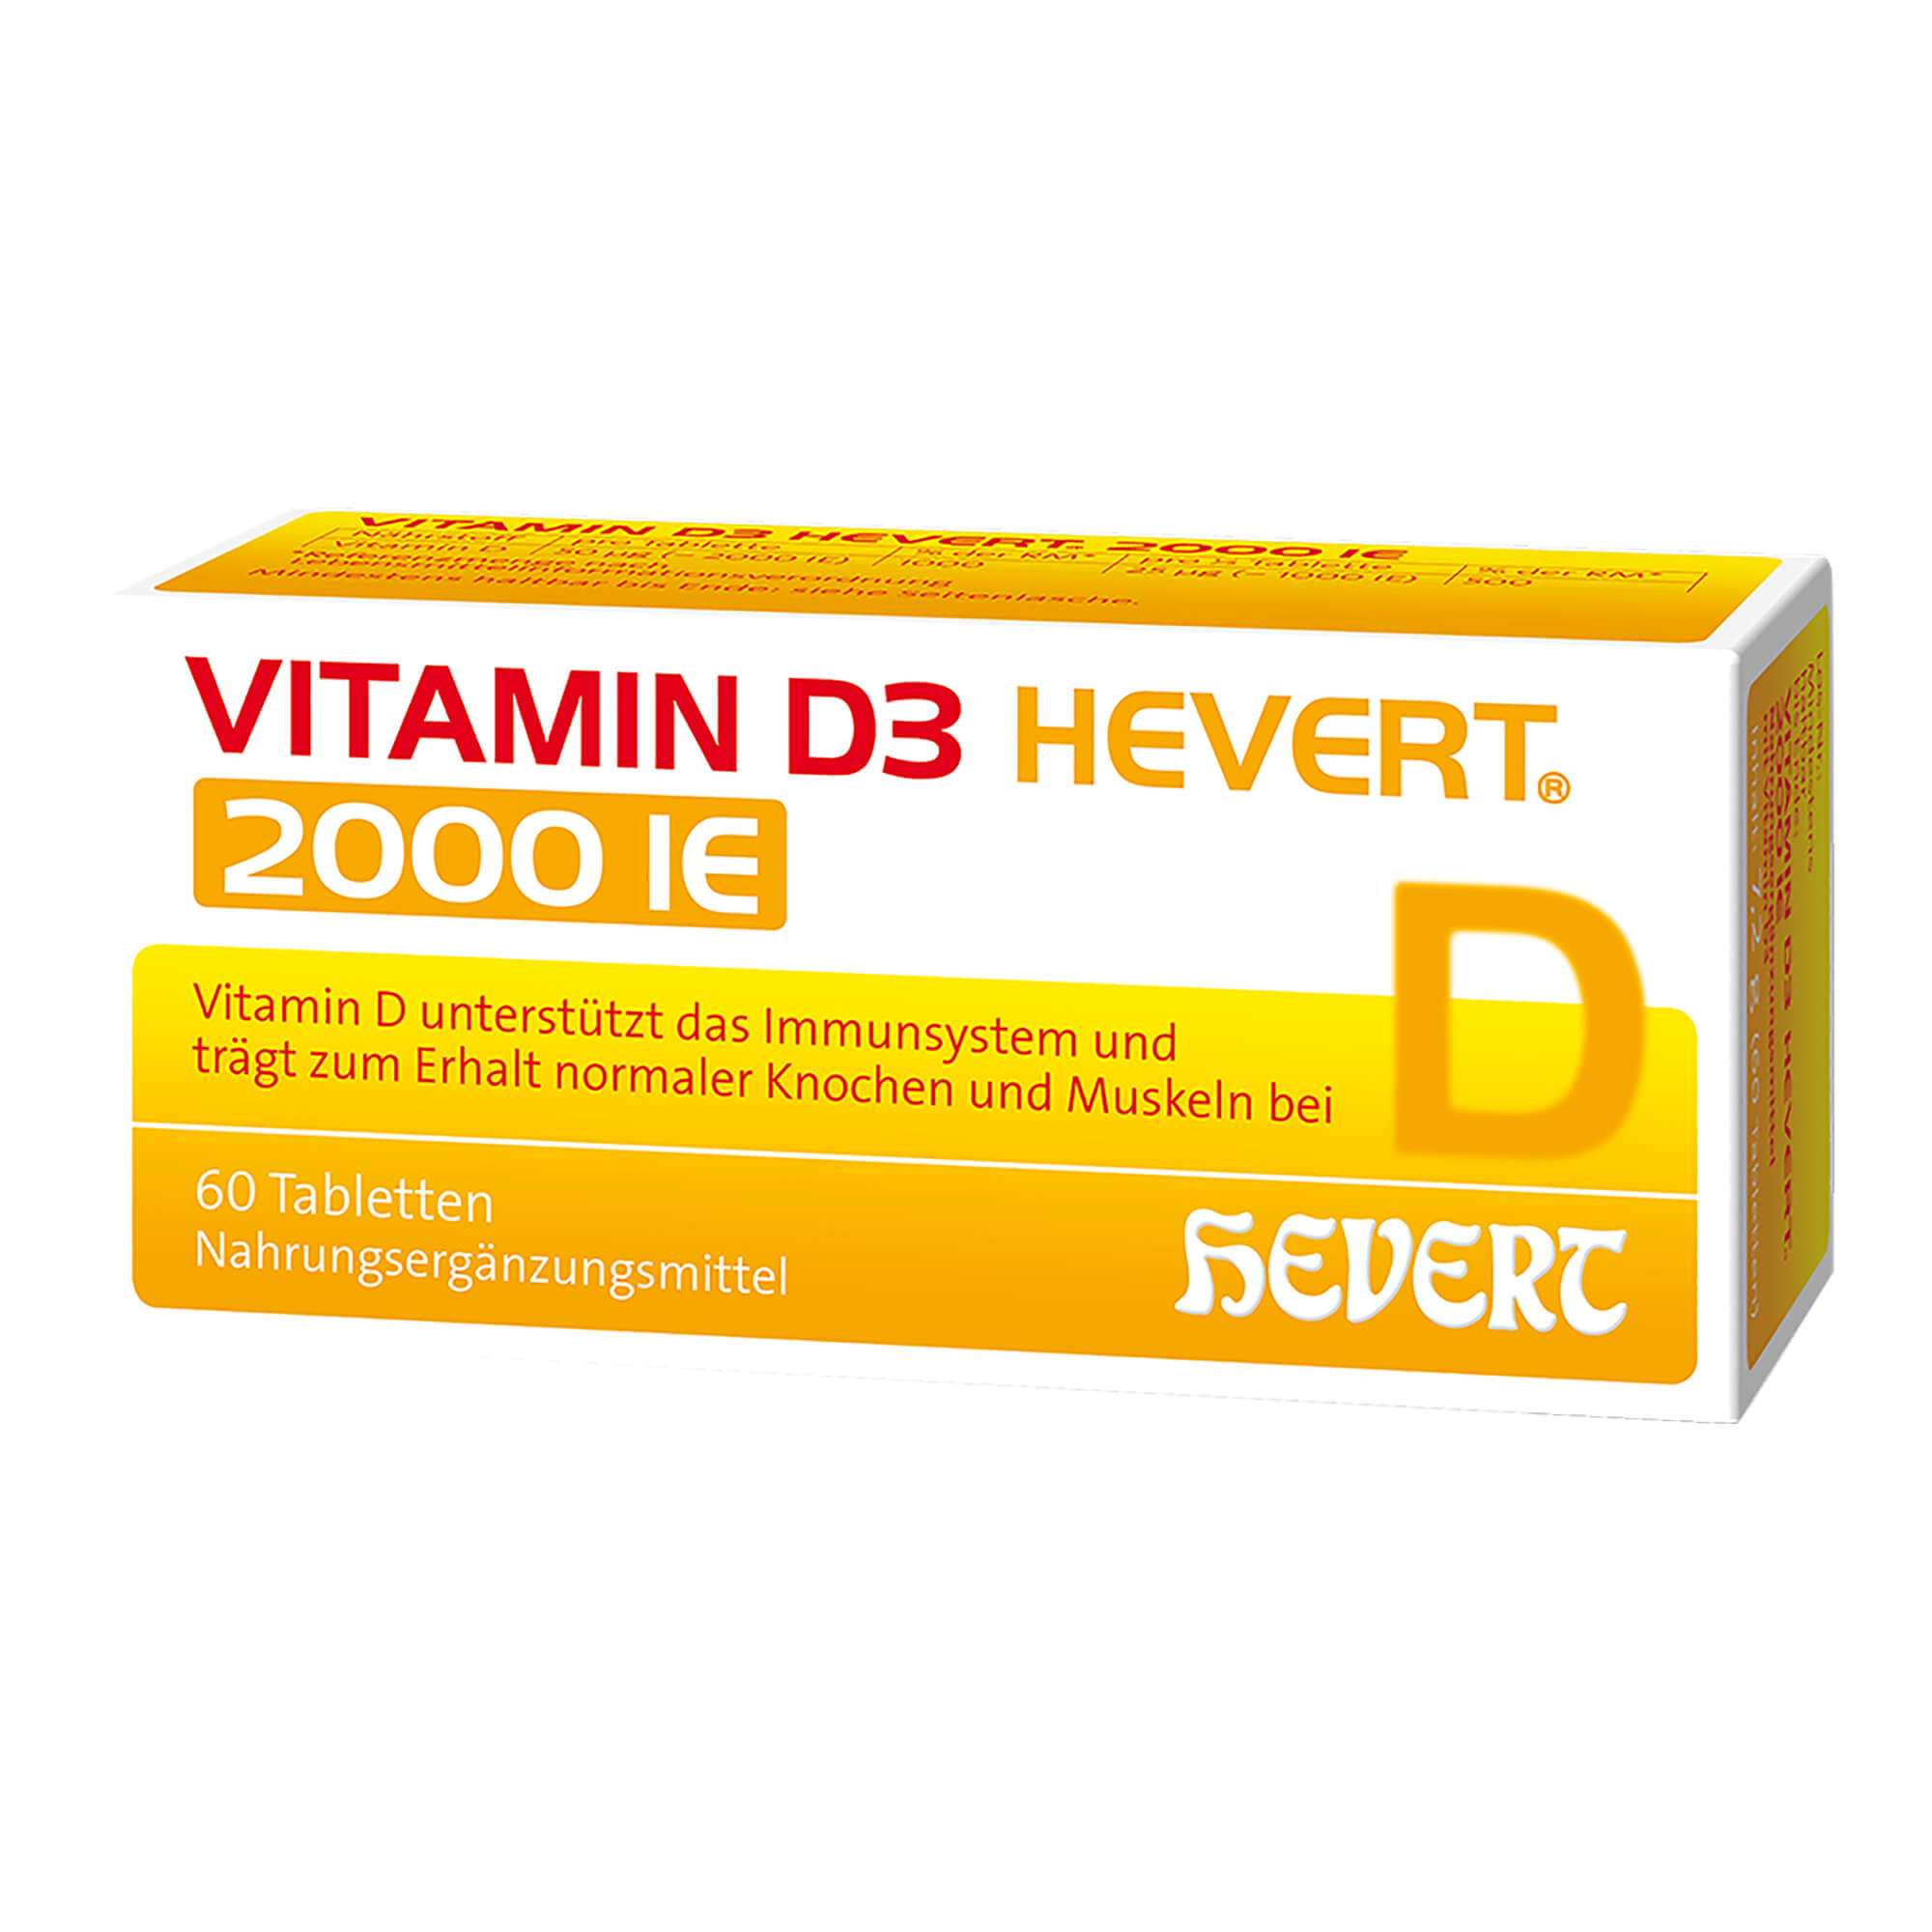 Zur Vorbeugung und Behandlung eines Vitamin D3 Mangels.